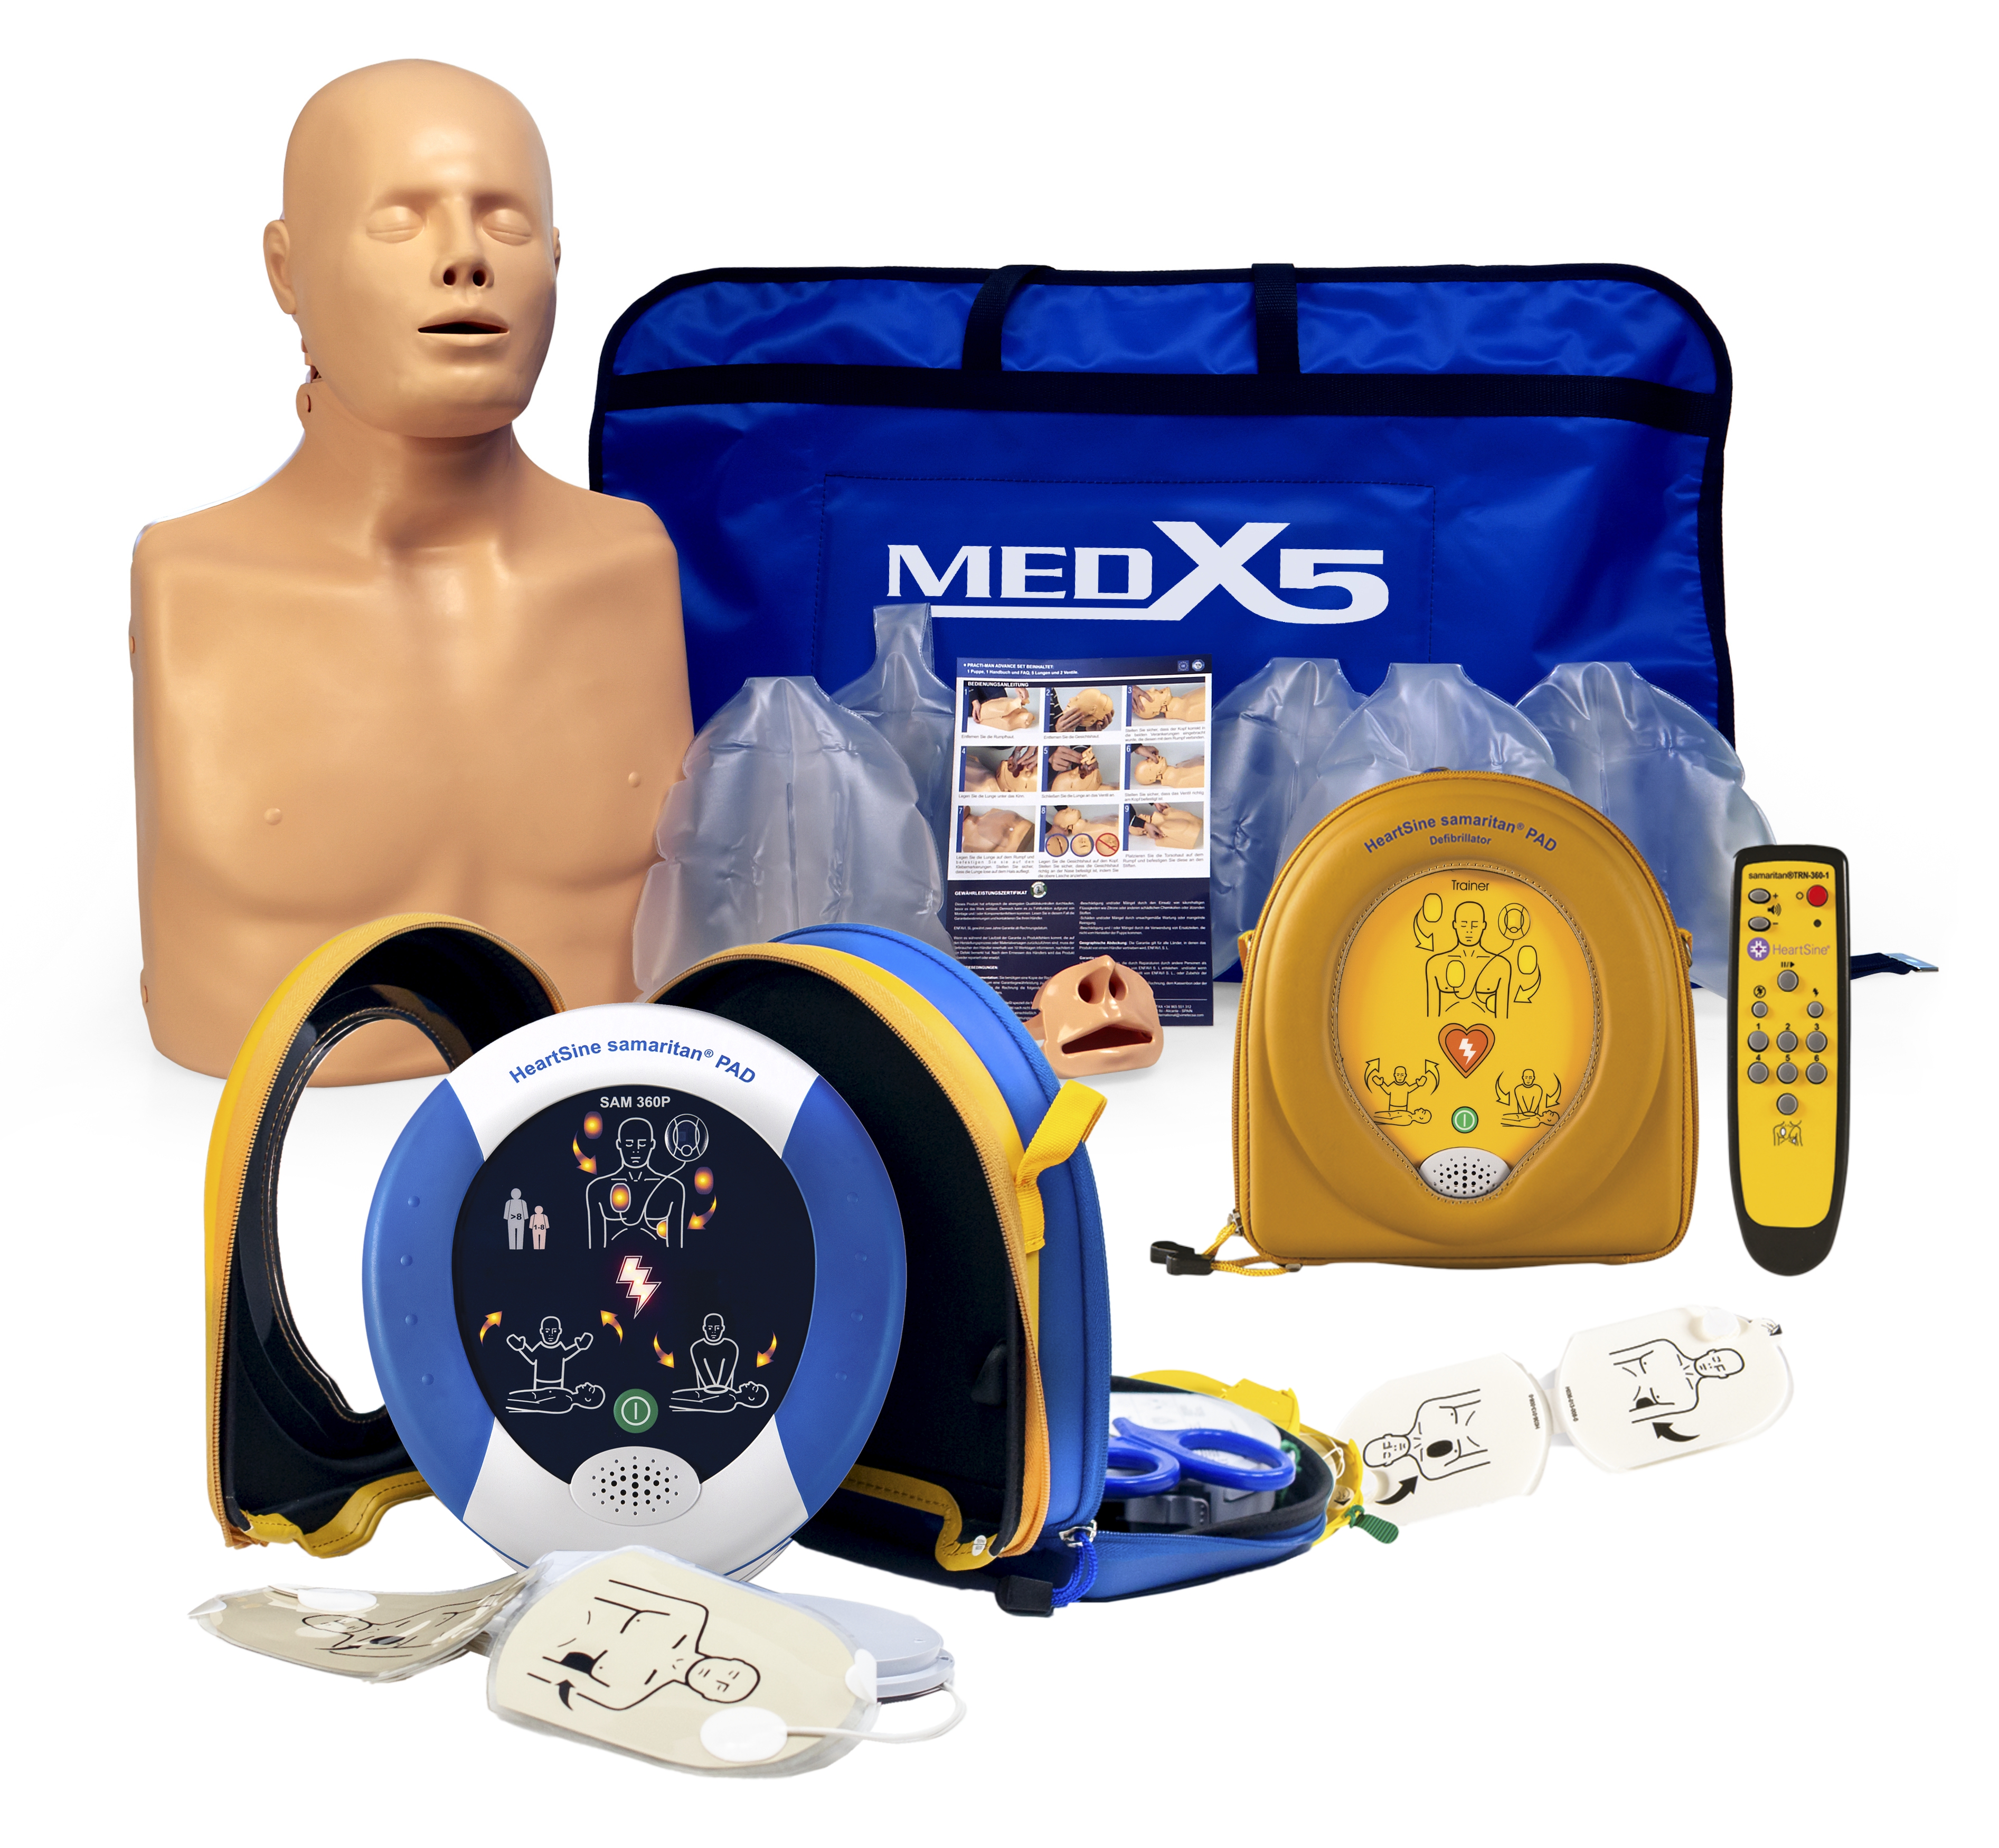 HeartSine SAM 360P Defibrillator, PAD360 Trainer und 2 in 1 Übungspuppe